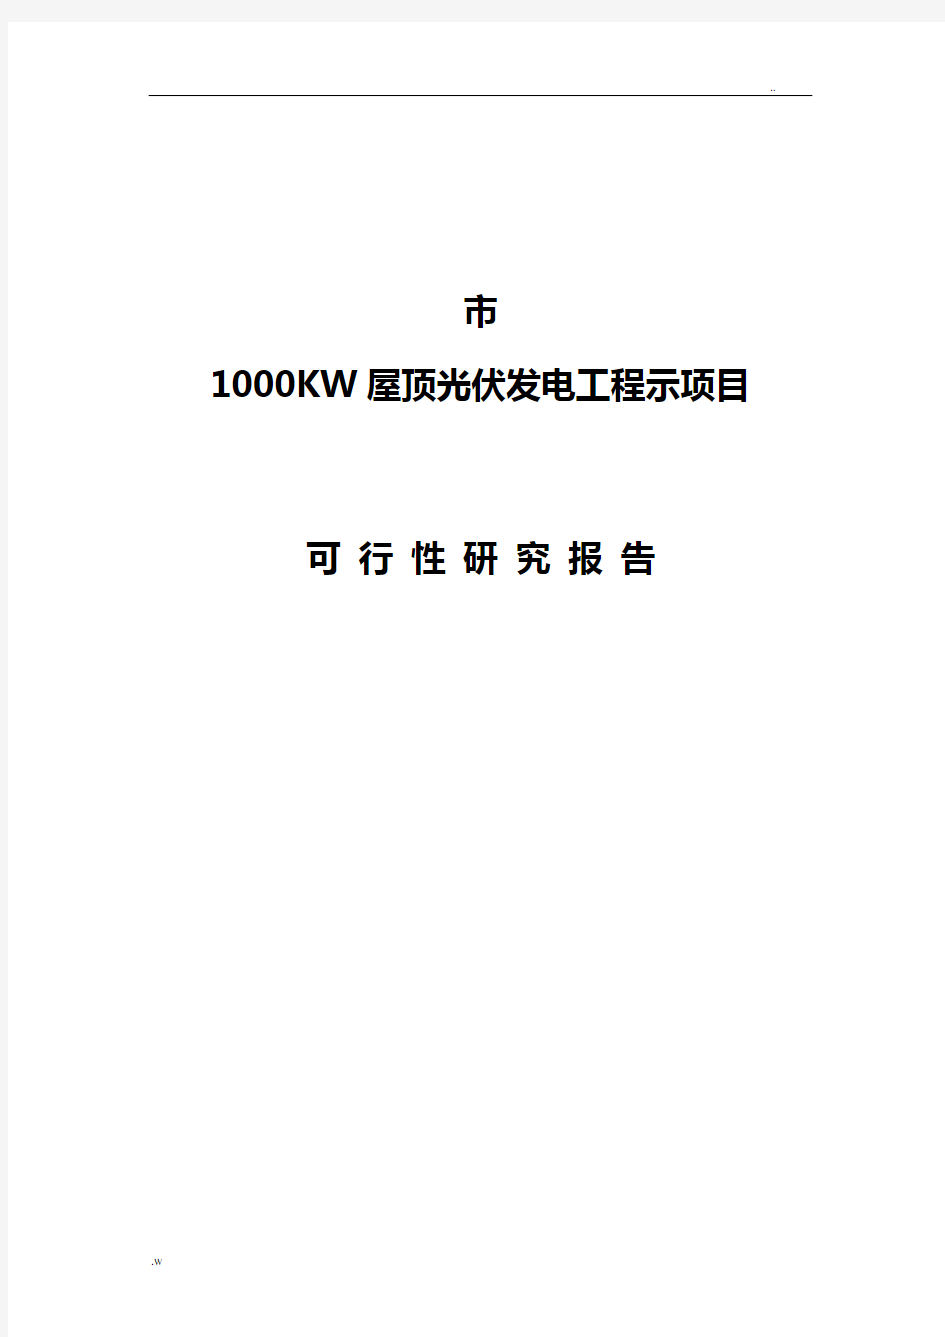 宁波市1000KW屋顶光伏发电可行性报告